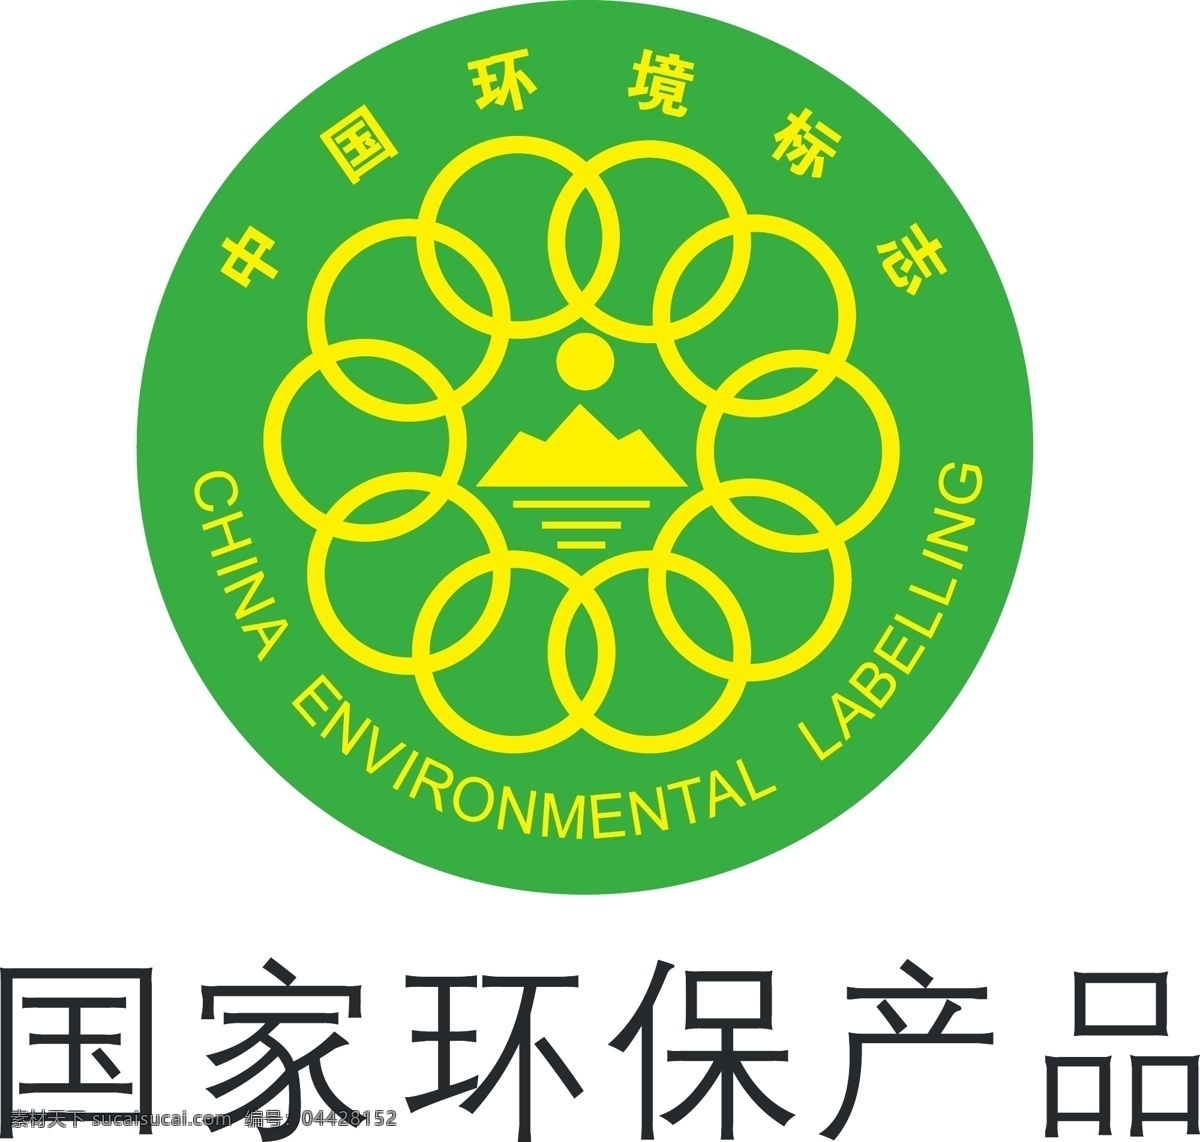 国家环保产品 国家环保 logo 标志 矢量